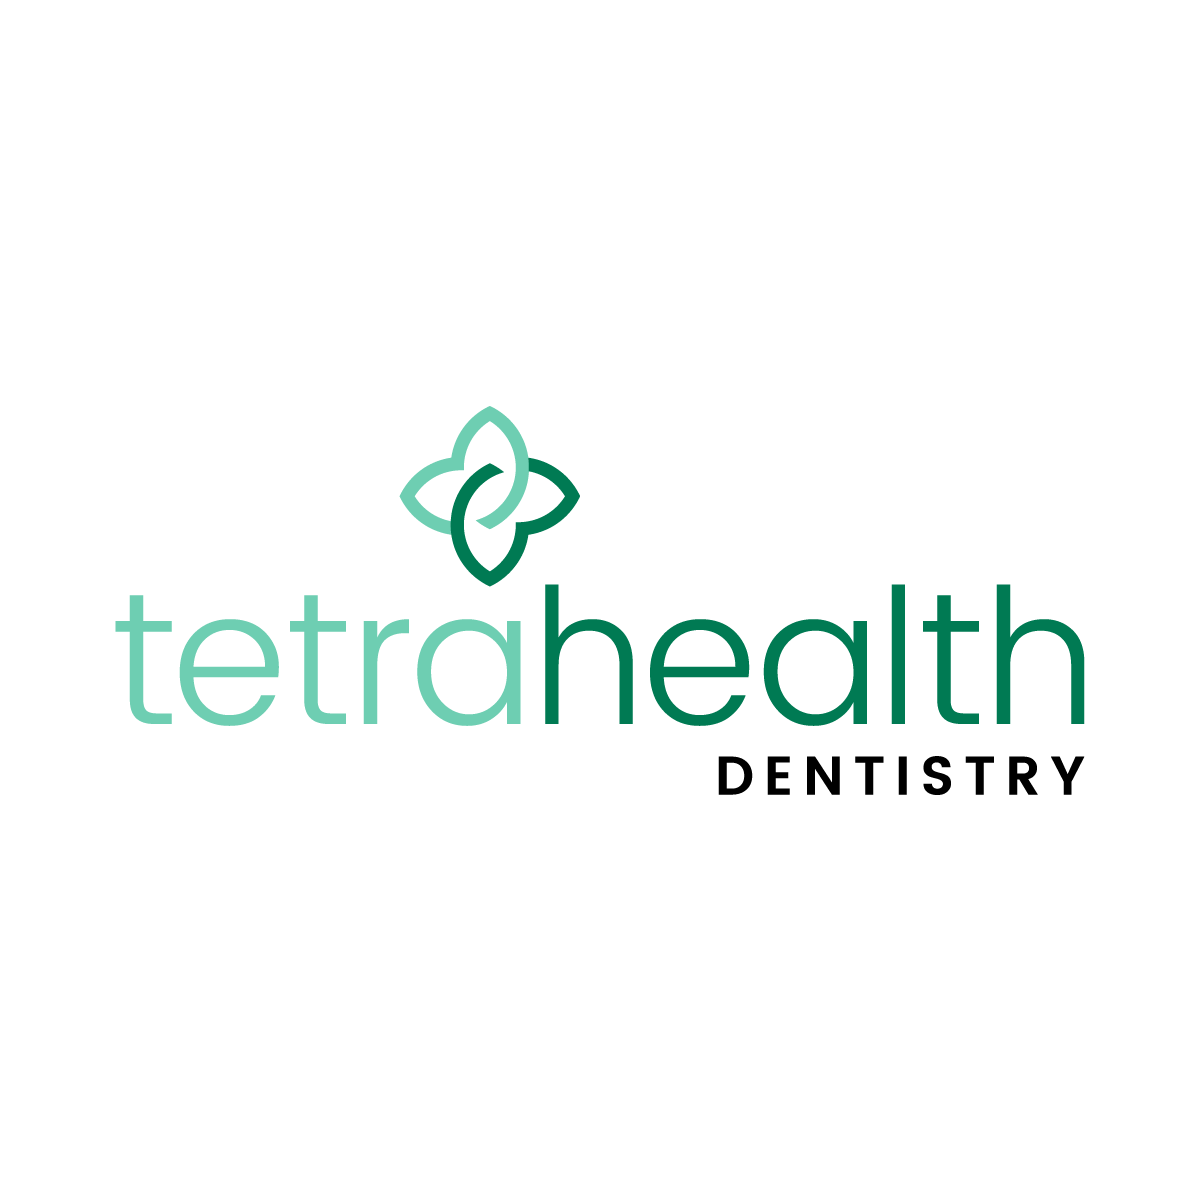 Tetrahealth Dentistry